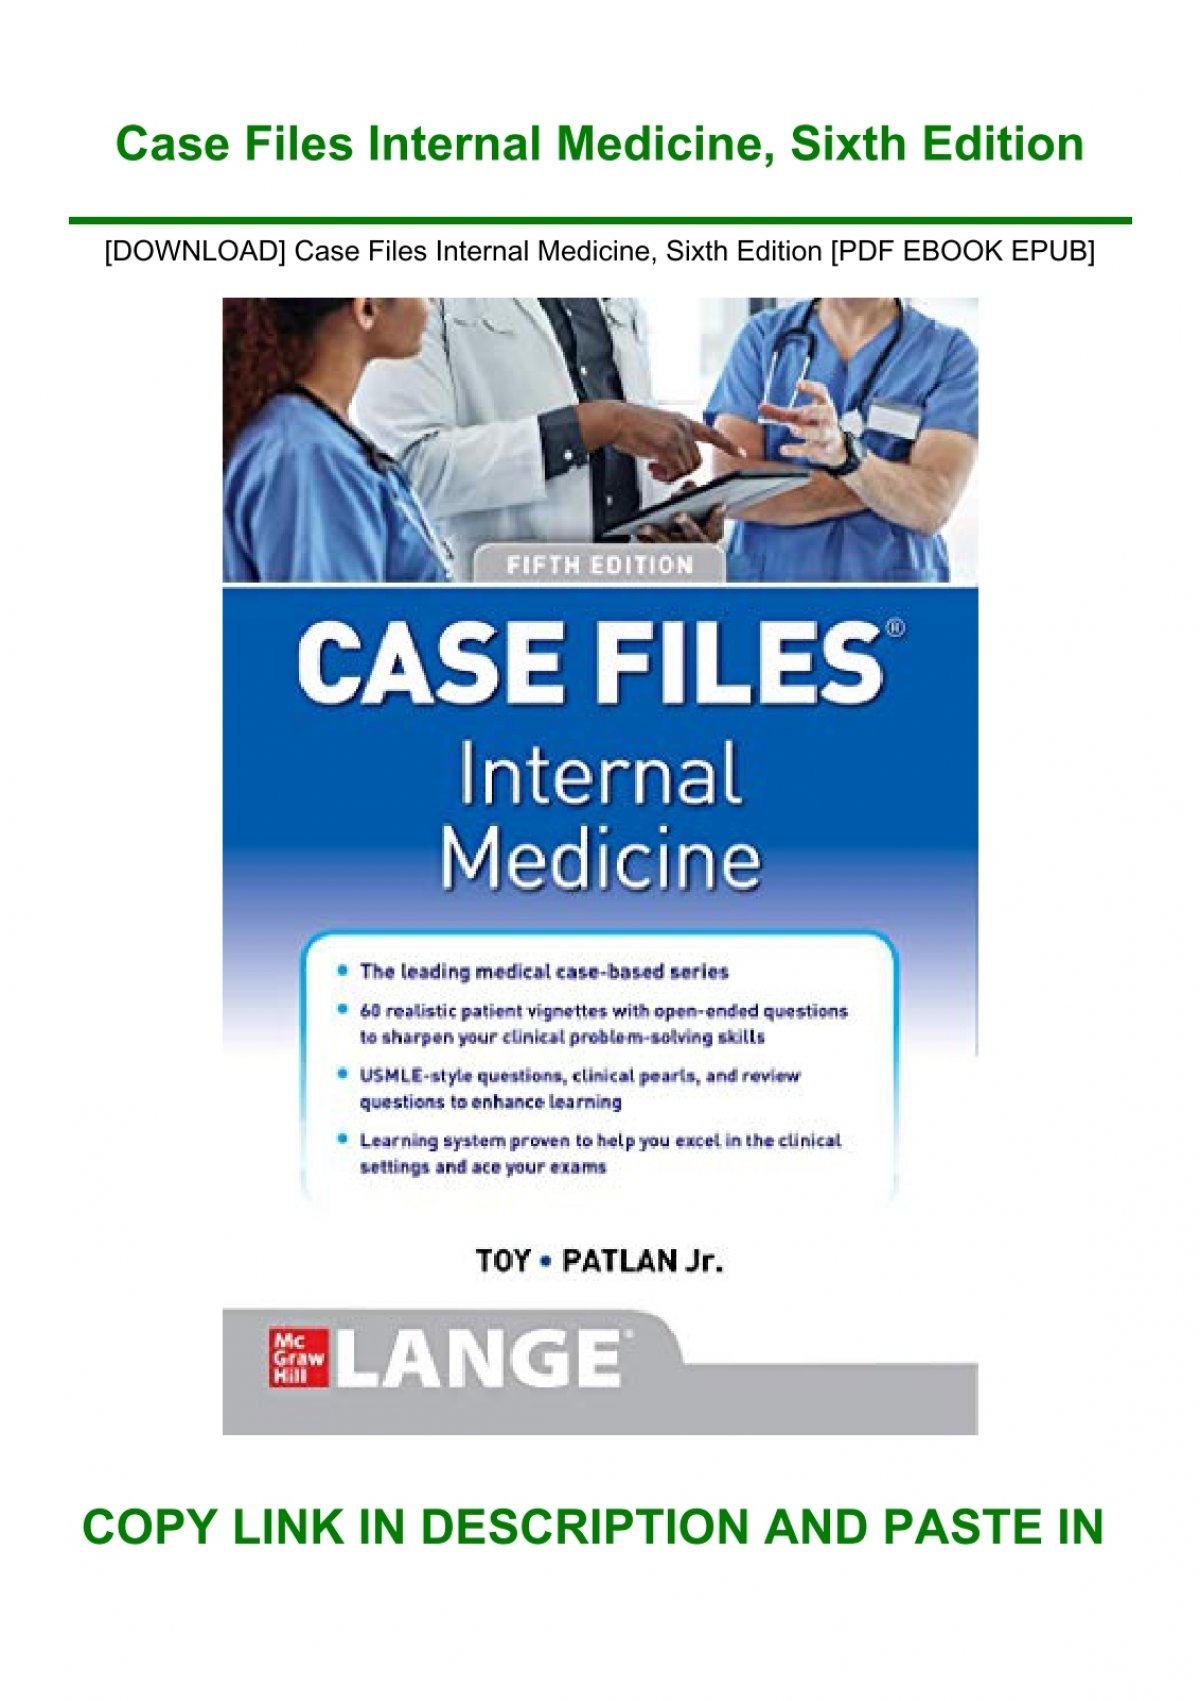 DOWNLOAD] Case Files Internal Medicine Sixth Edition [PDF EBOOK EPUB]